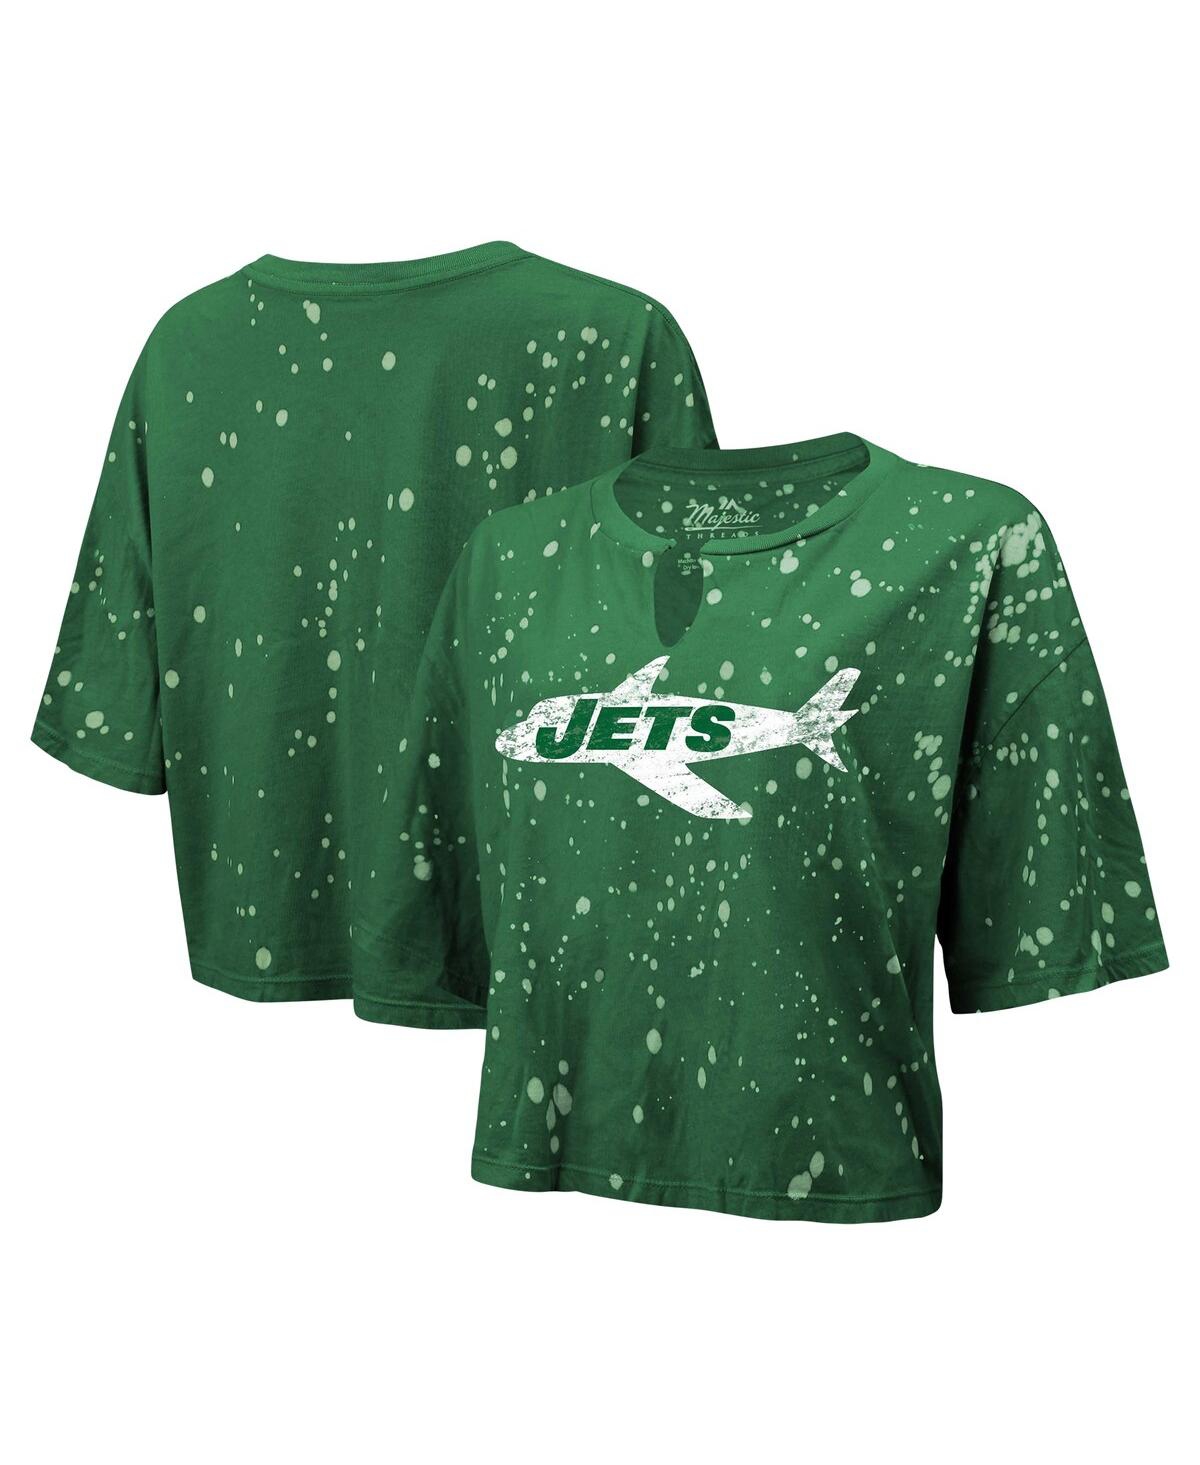 Women's Majestic Threads Green Distressed New York Jets Bleach Splatter Notch Neck Crop T-shirt - Green